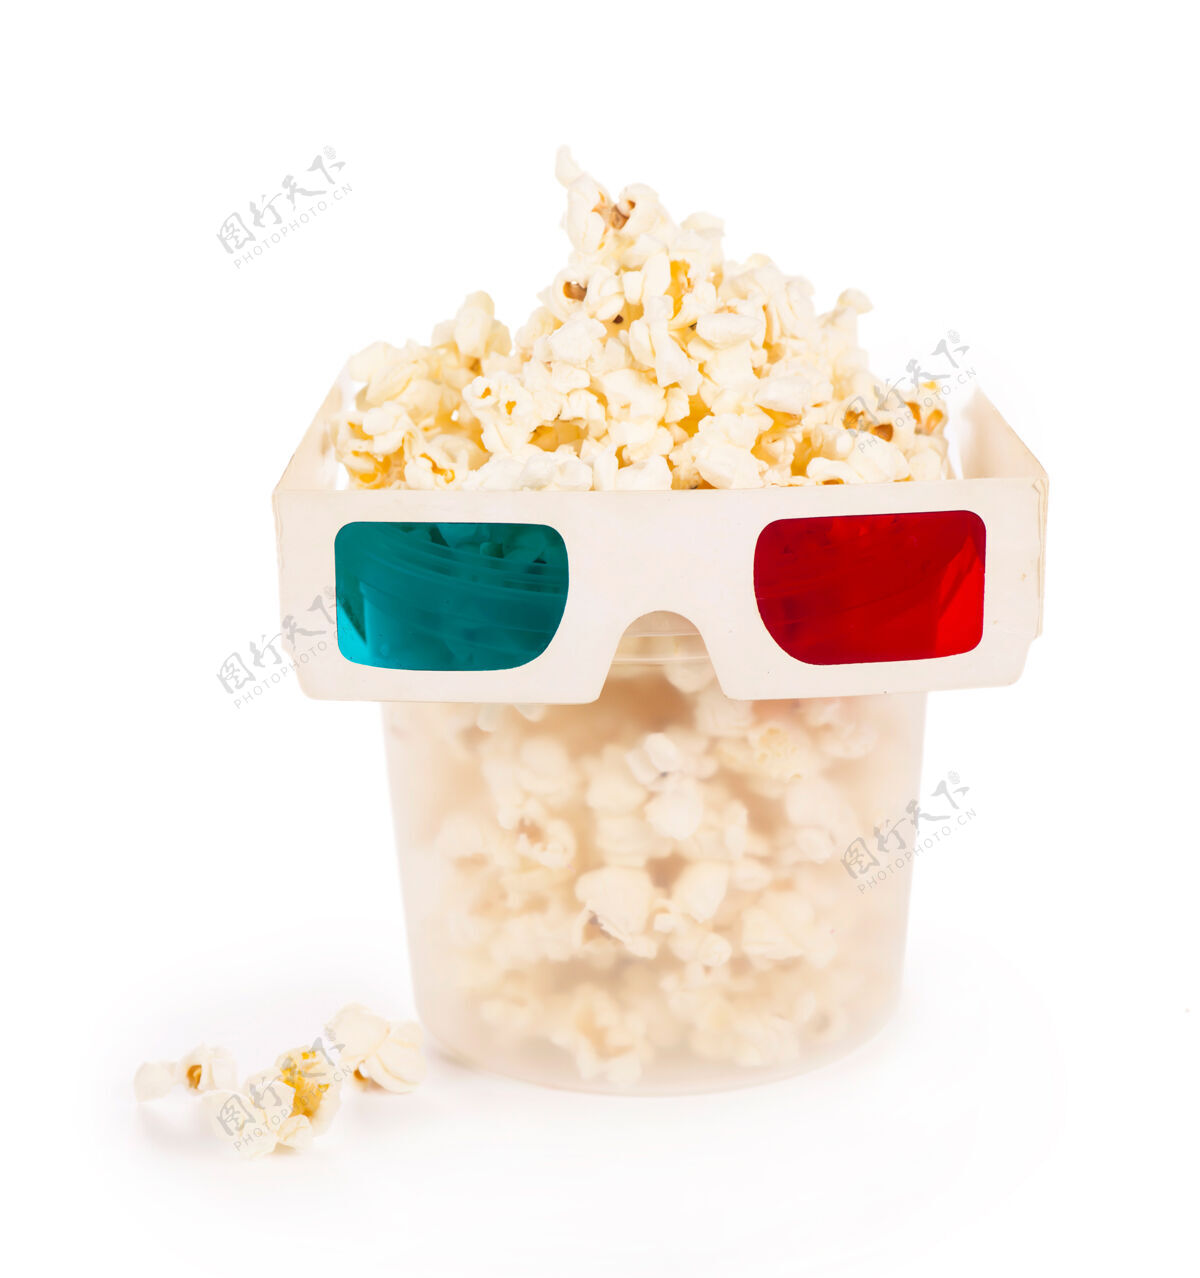 首映纸条纹桶爆米花和3d眼镜隔离在白色背景与剪辑路径电视倒影红色